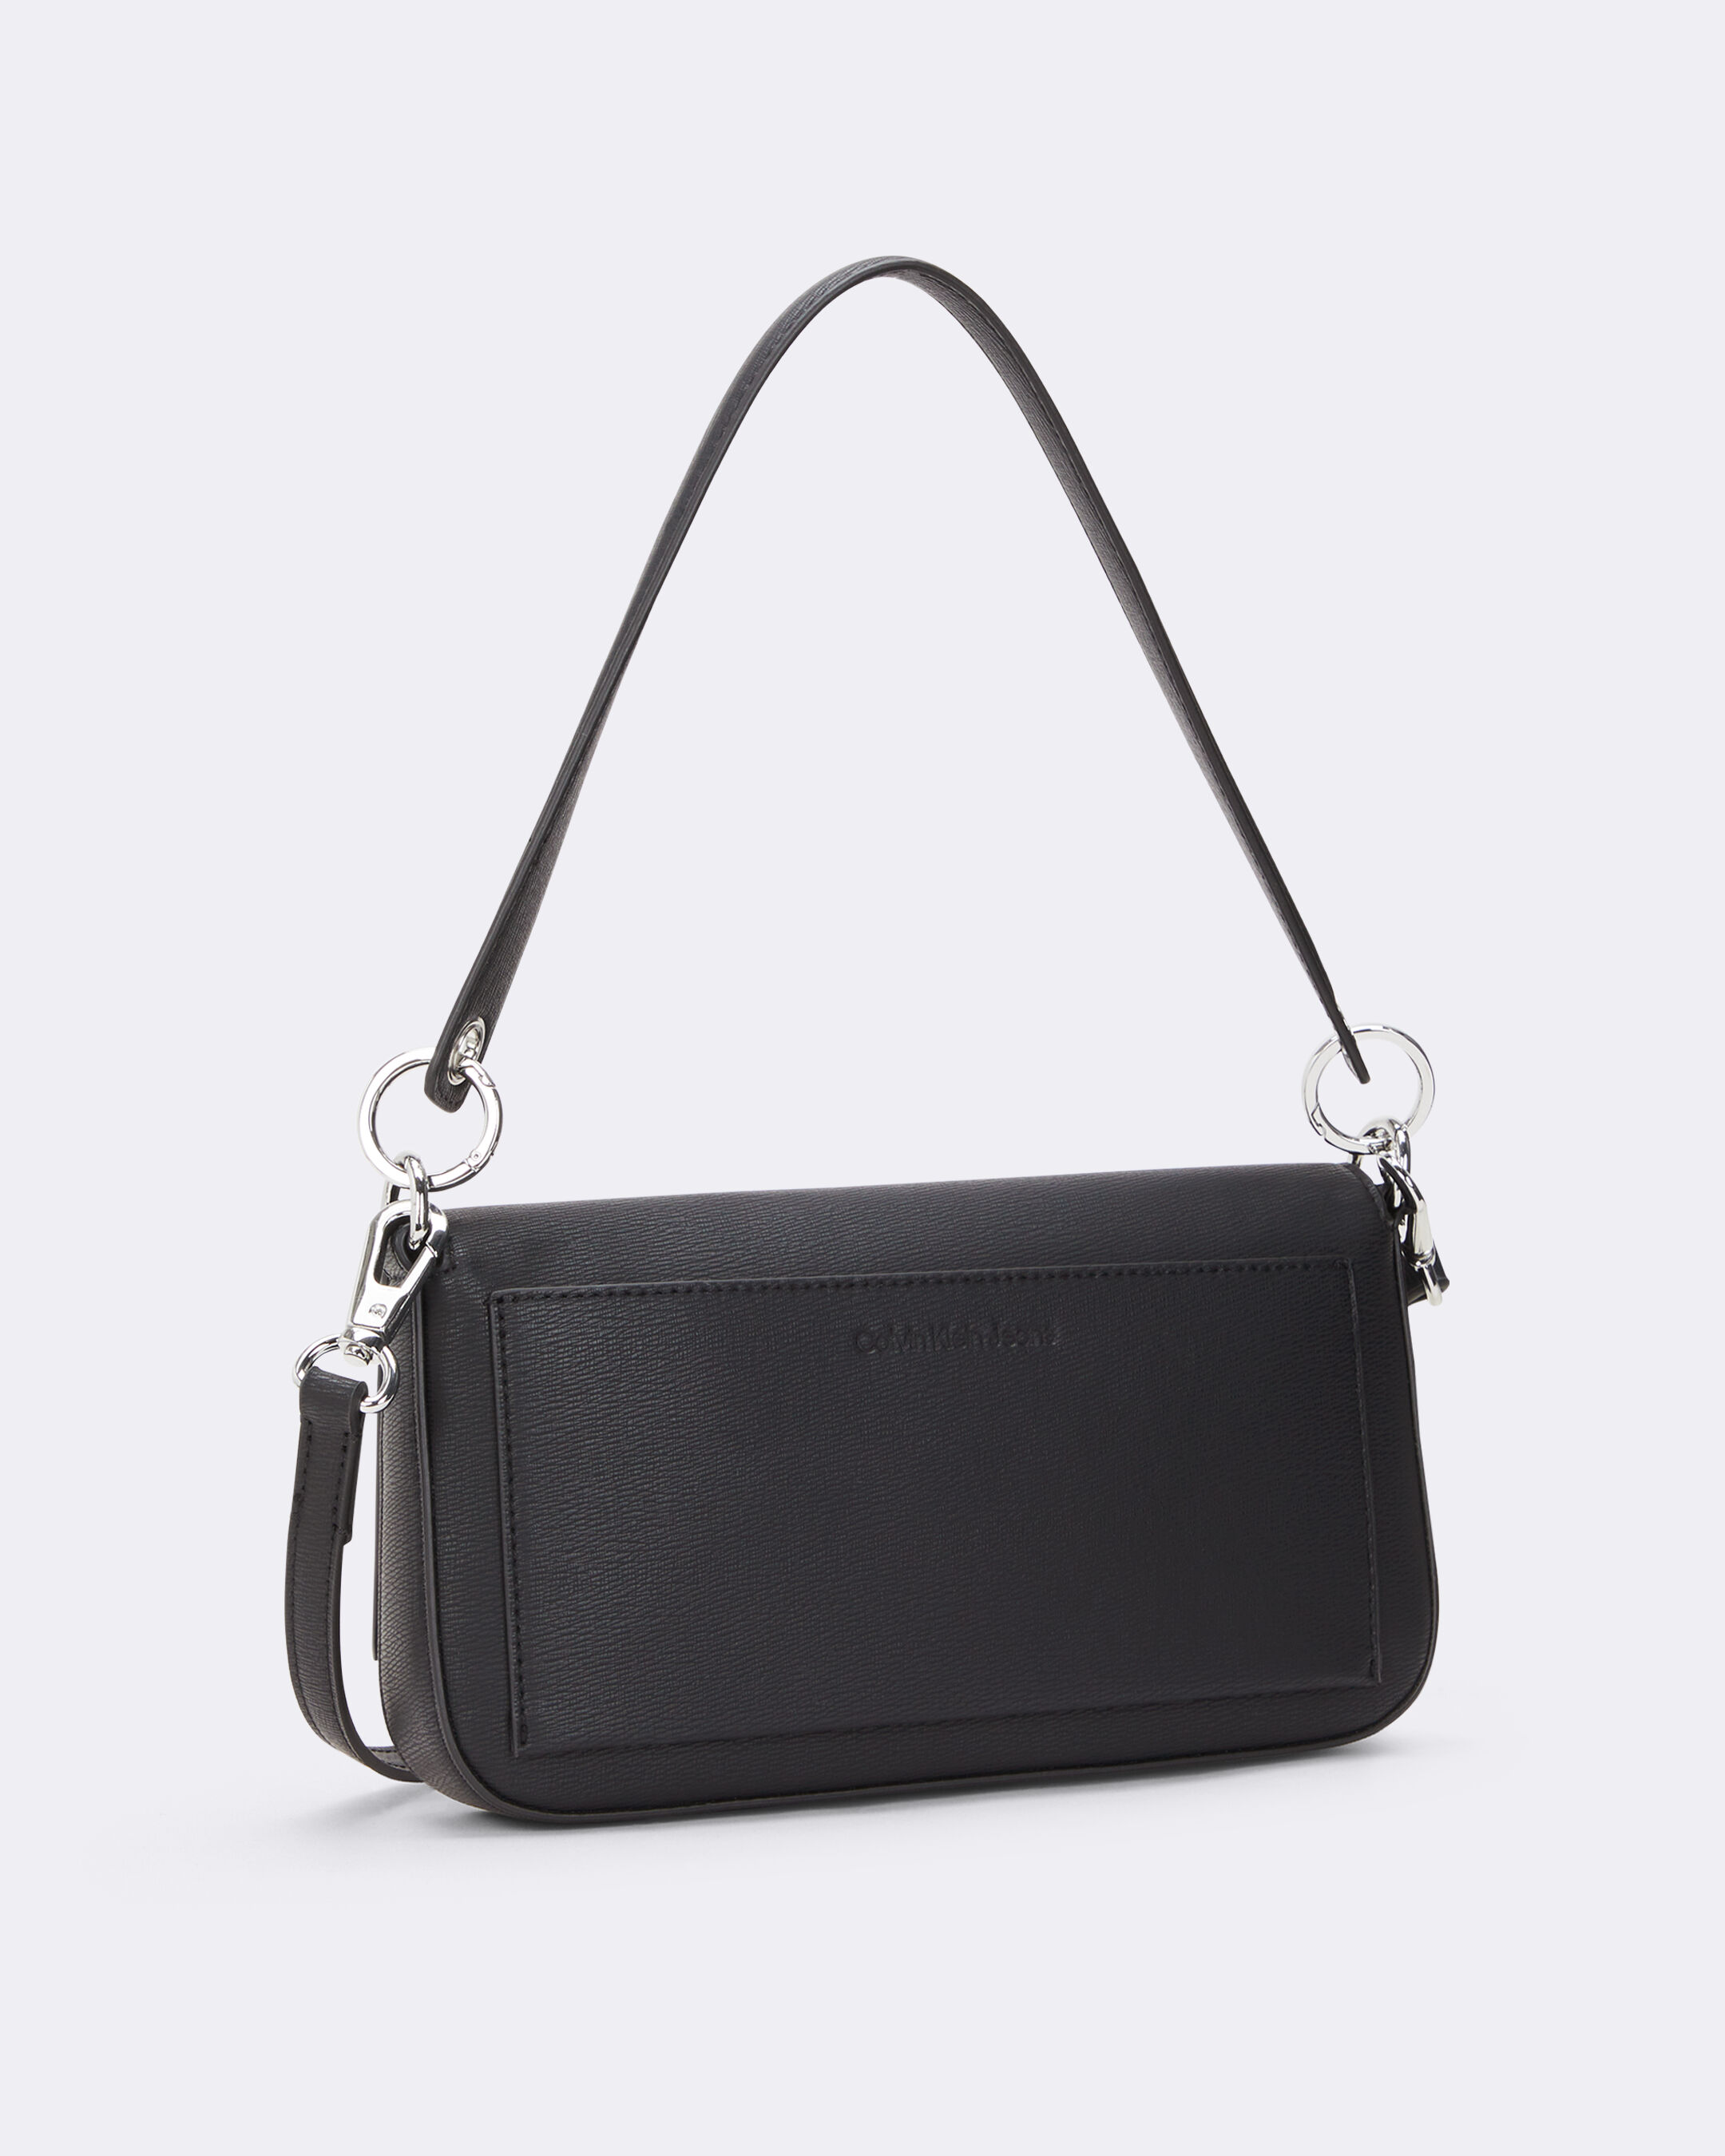 Calvin Klein Pebble Crossbody Bag Small Brown Leather Purse H3DEA1KF | eBay